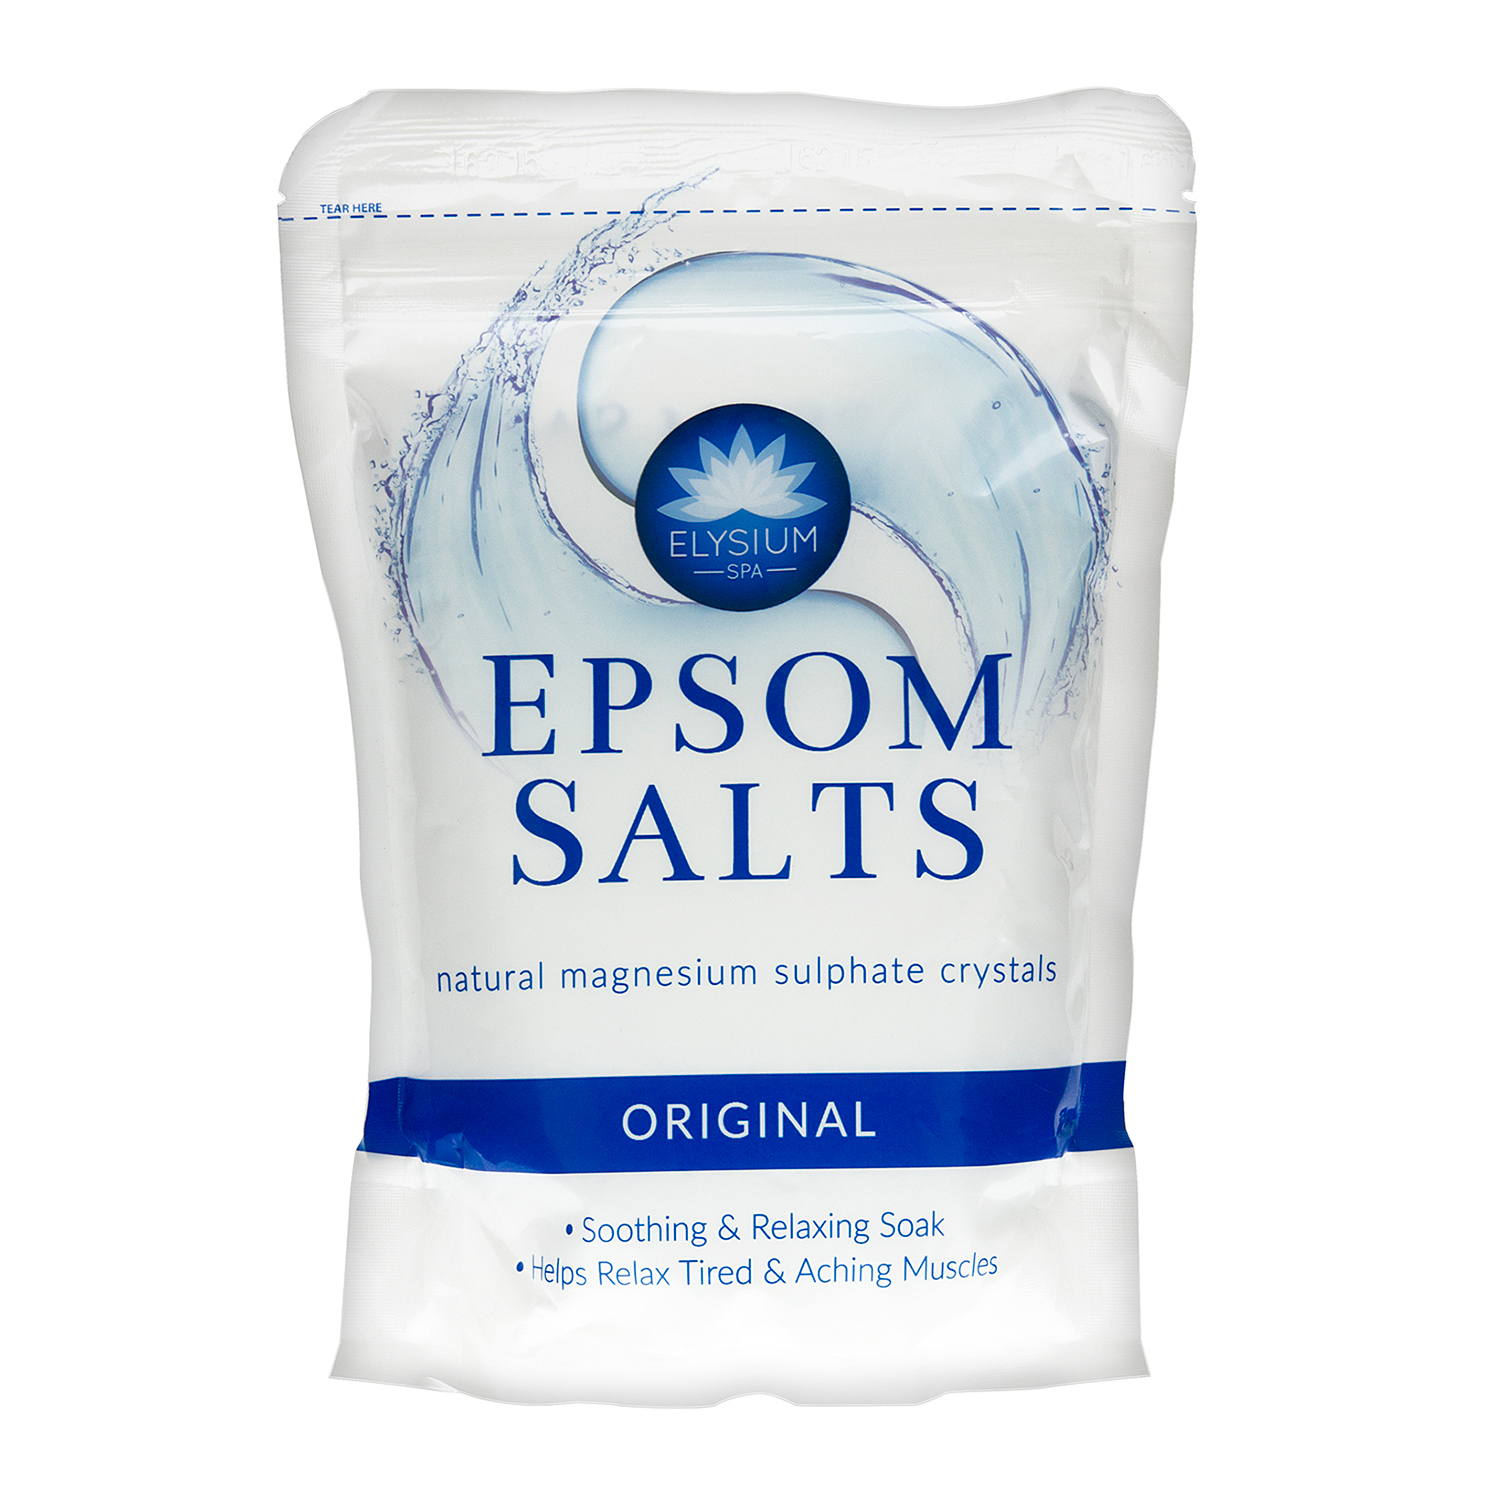 Elysium Spa Epsom Salts - Original Image